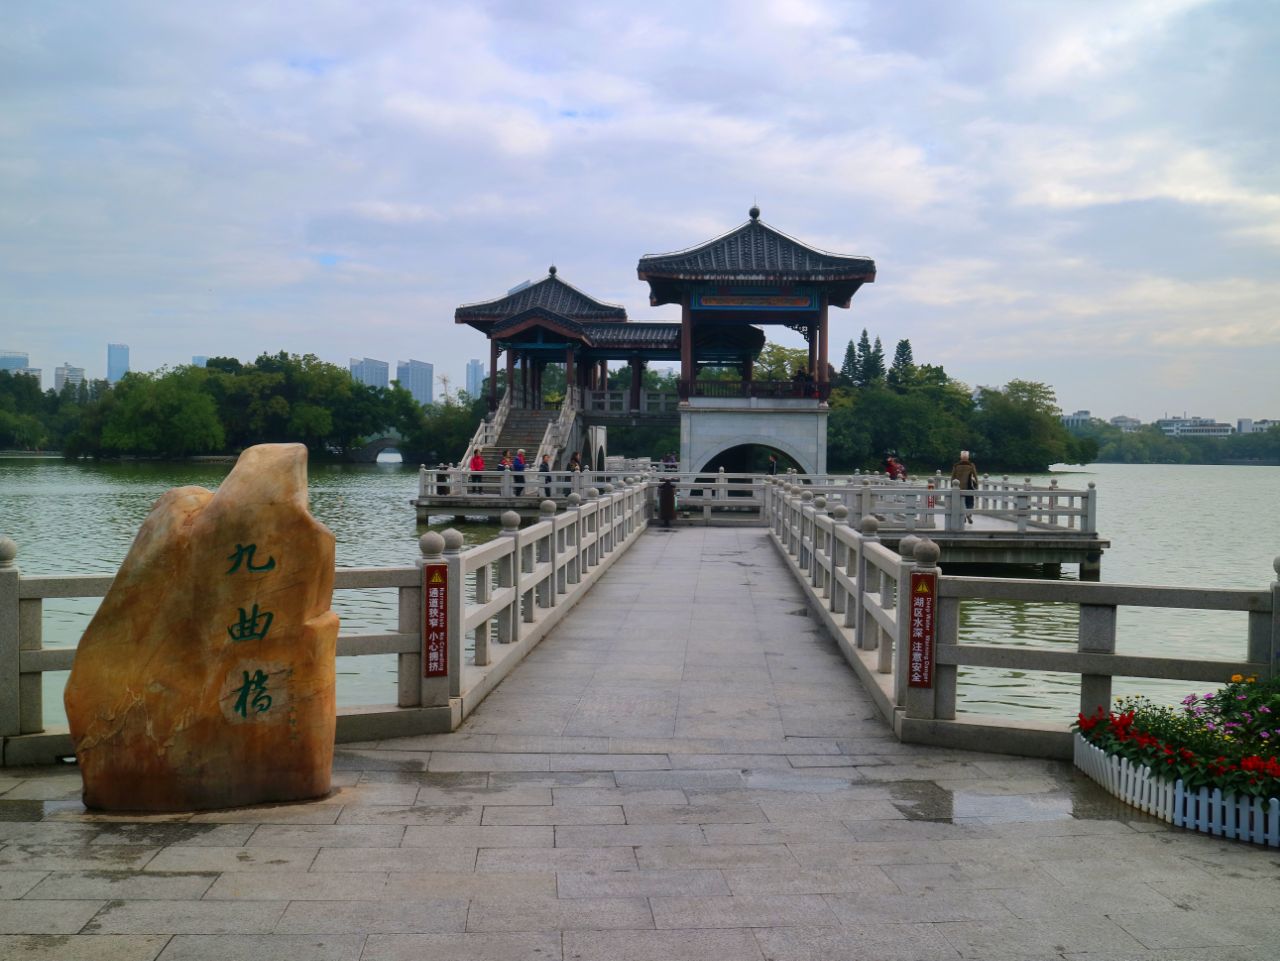 惠州西湖是国家重点风景名胜区和国家aaaa级旅游景区,来到惠州必去的